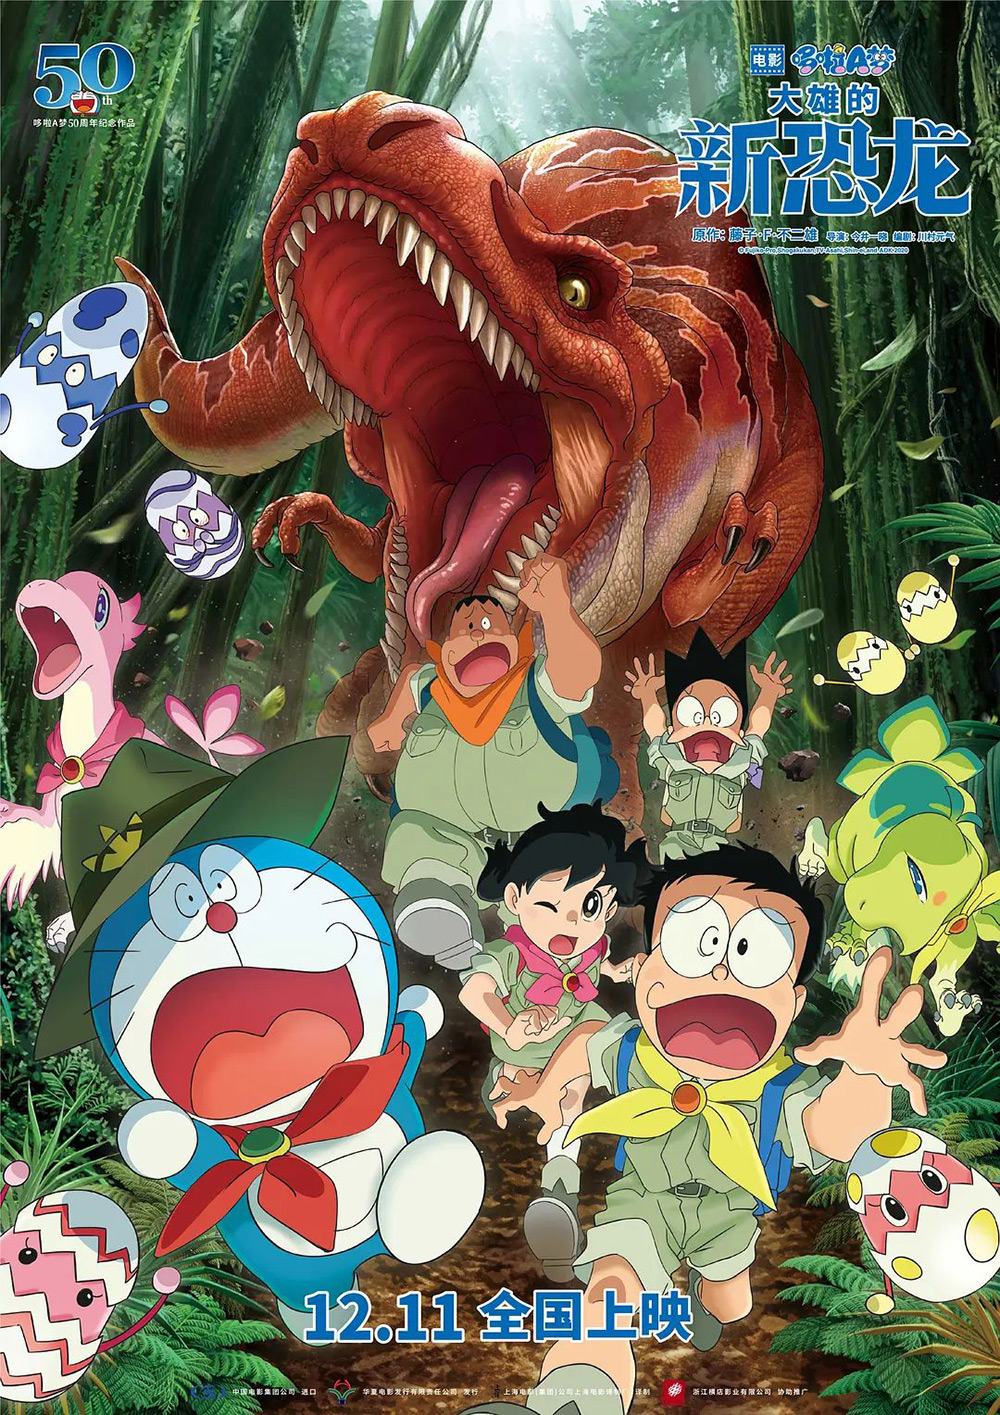 28张《哆啦A梦：大雄的新恐龙》电影海报设计